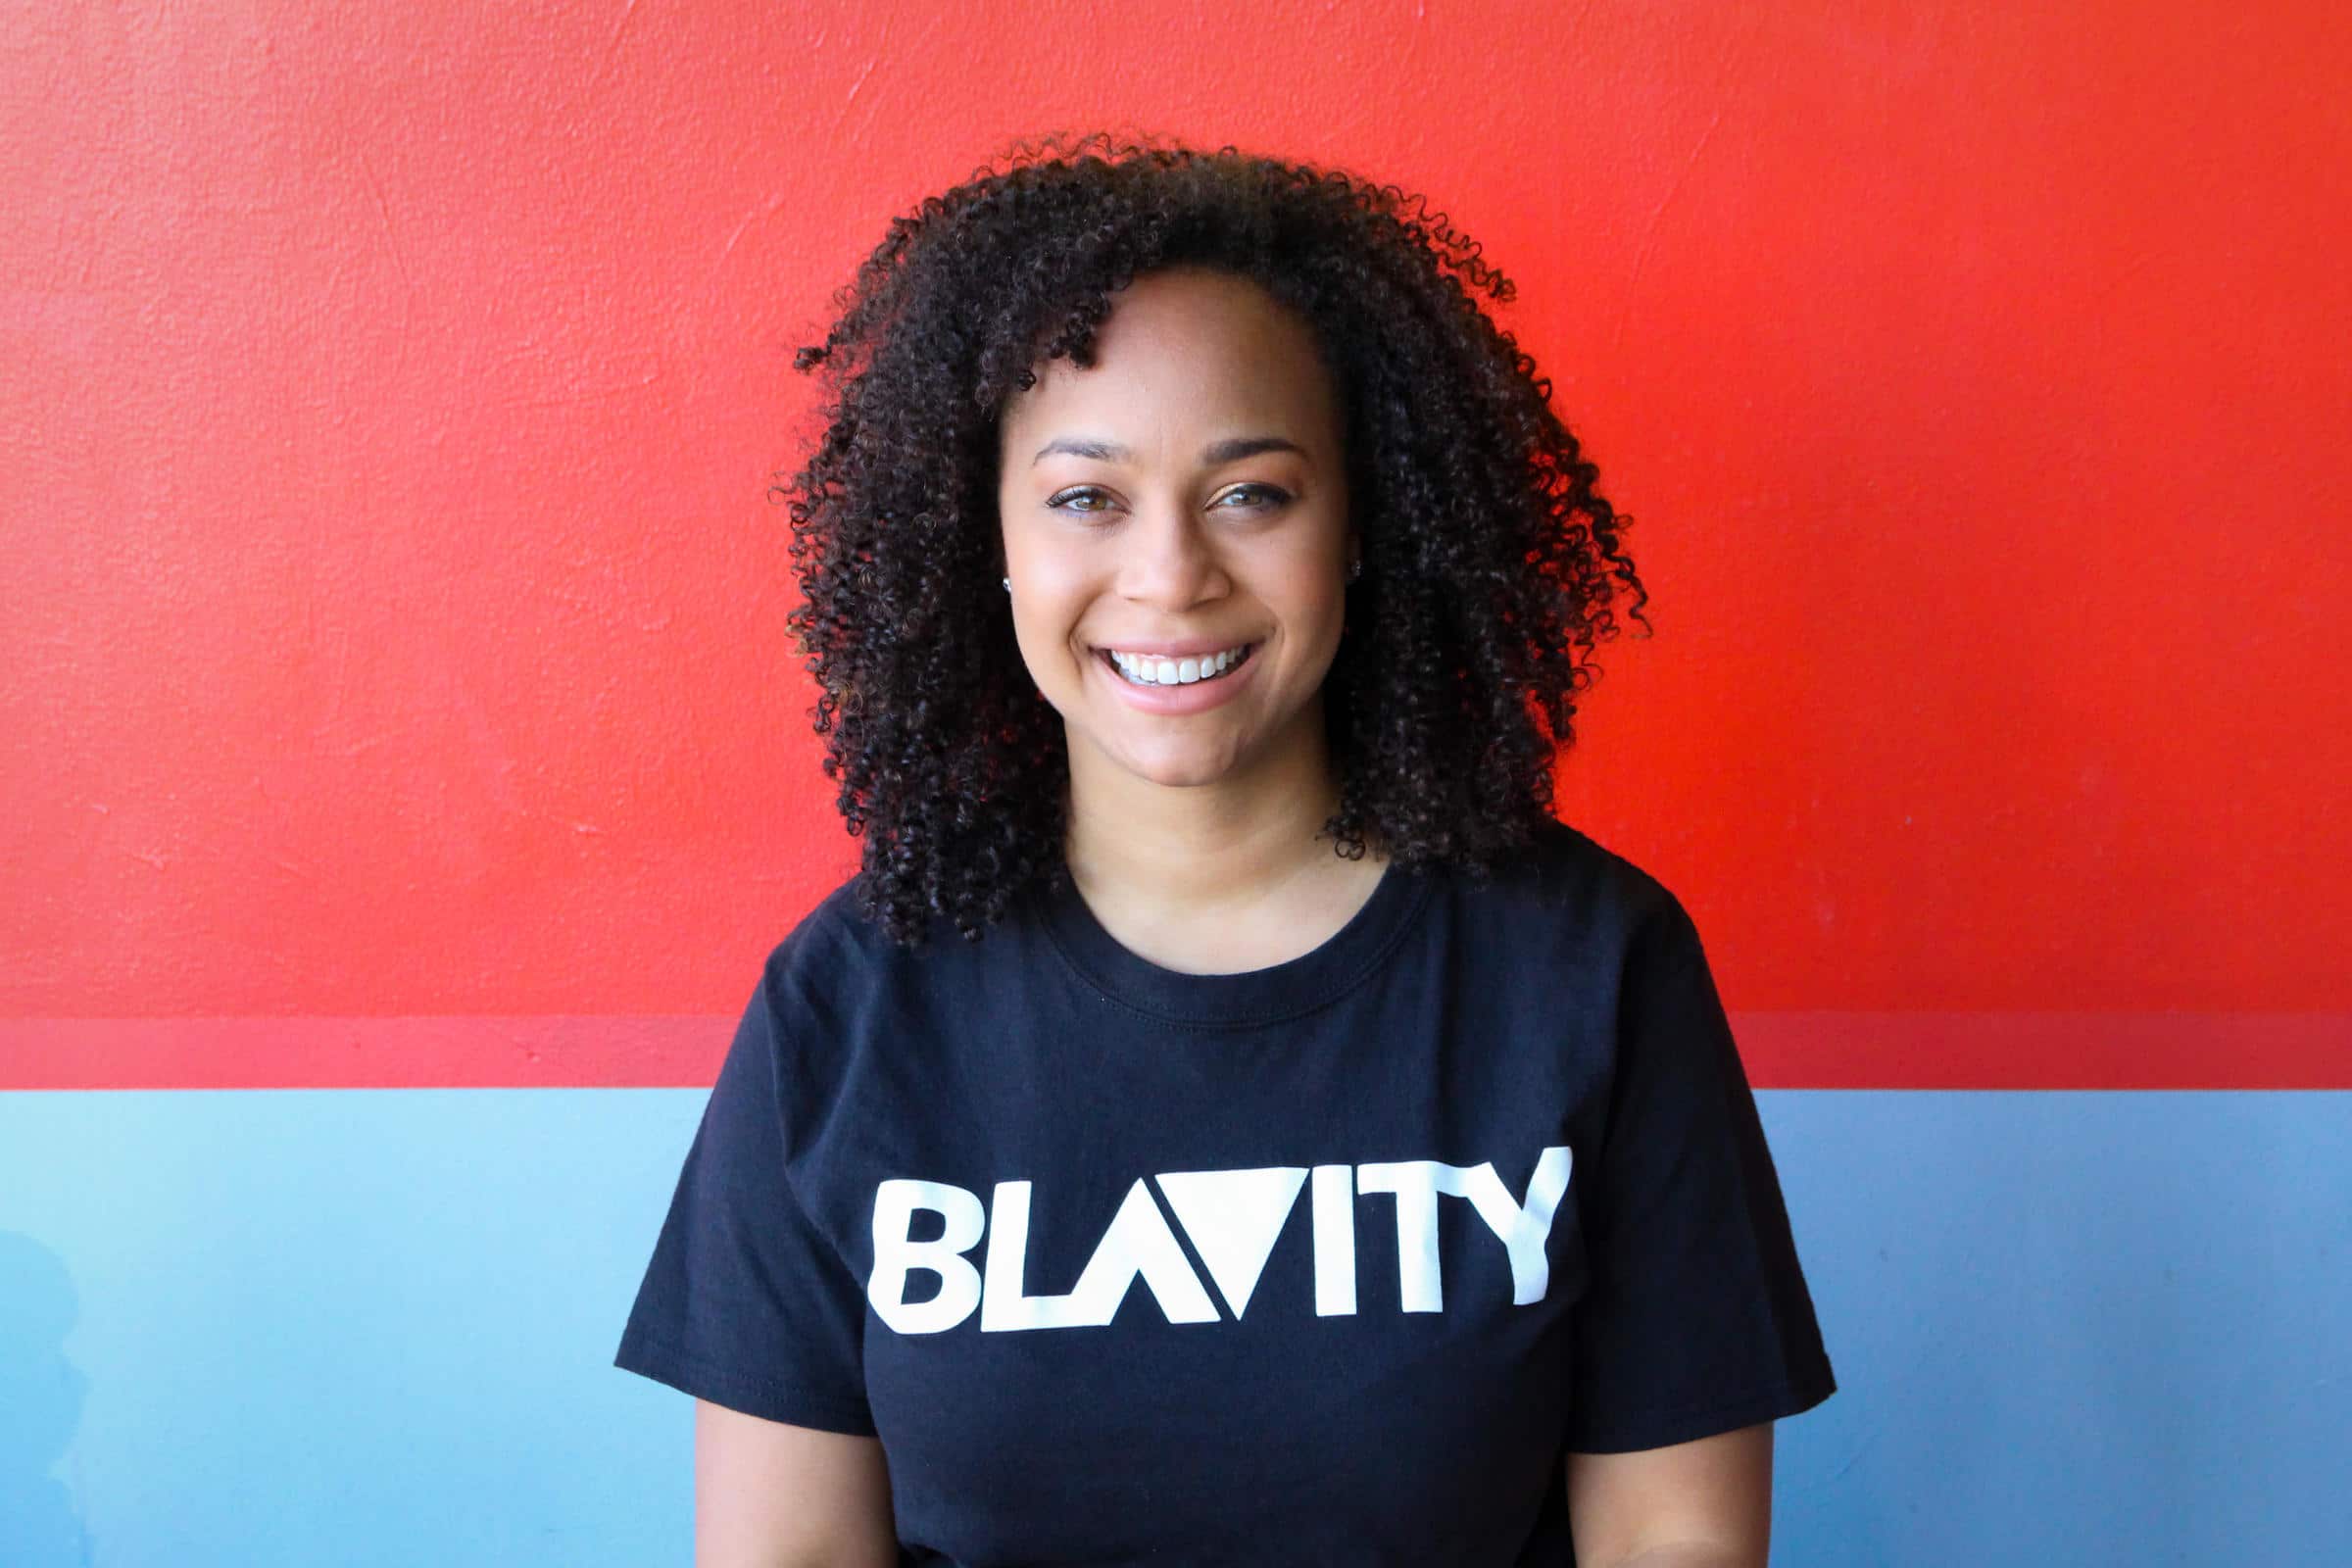 Female entrepreneurs and female founders: Morgan DeBaun of Blavity